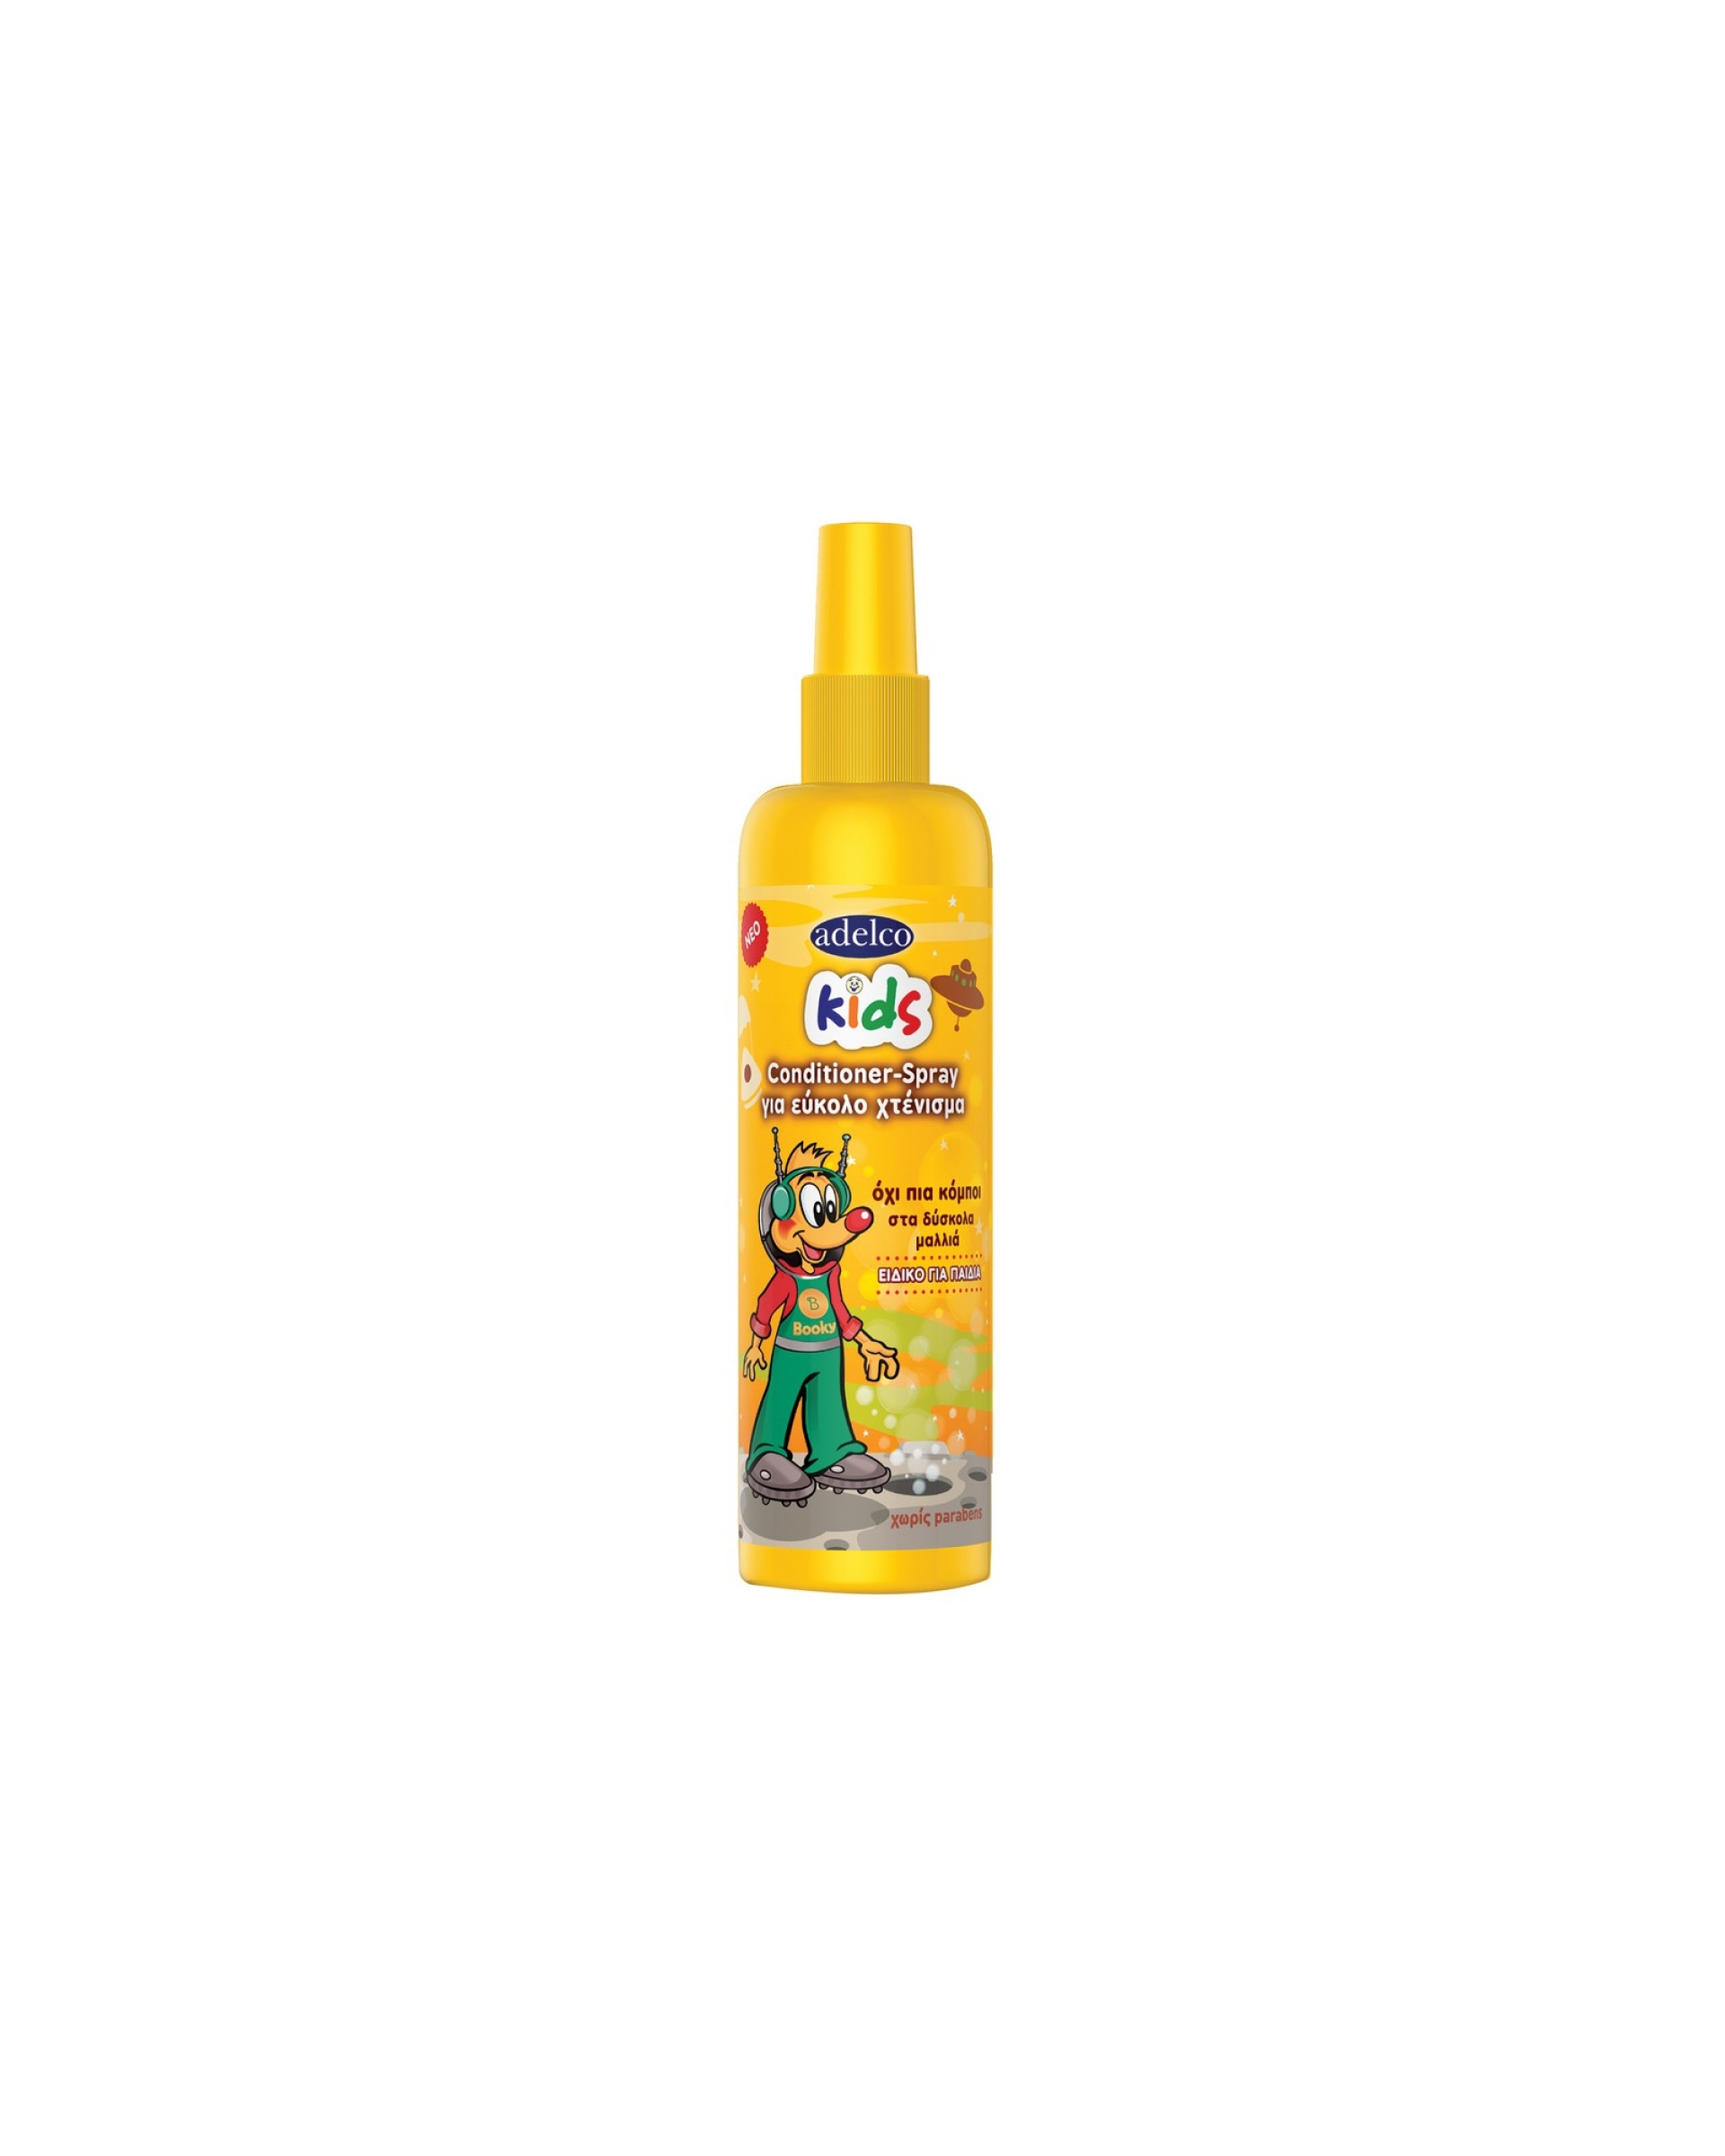 Adelco Kids Conditioner-Spray για εύκολο χτένισμα